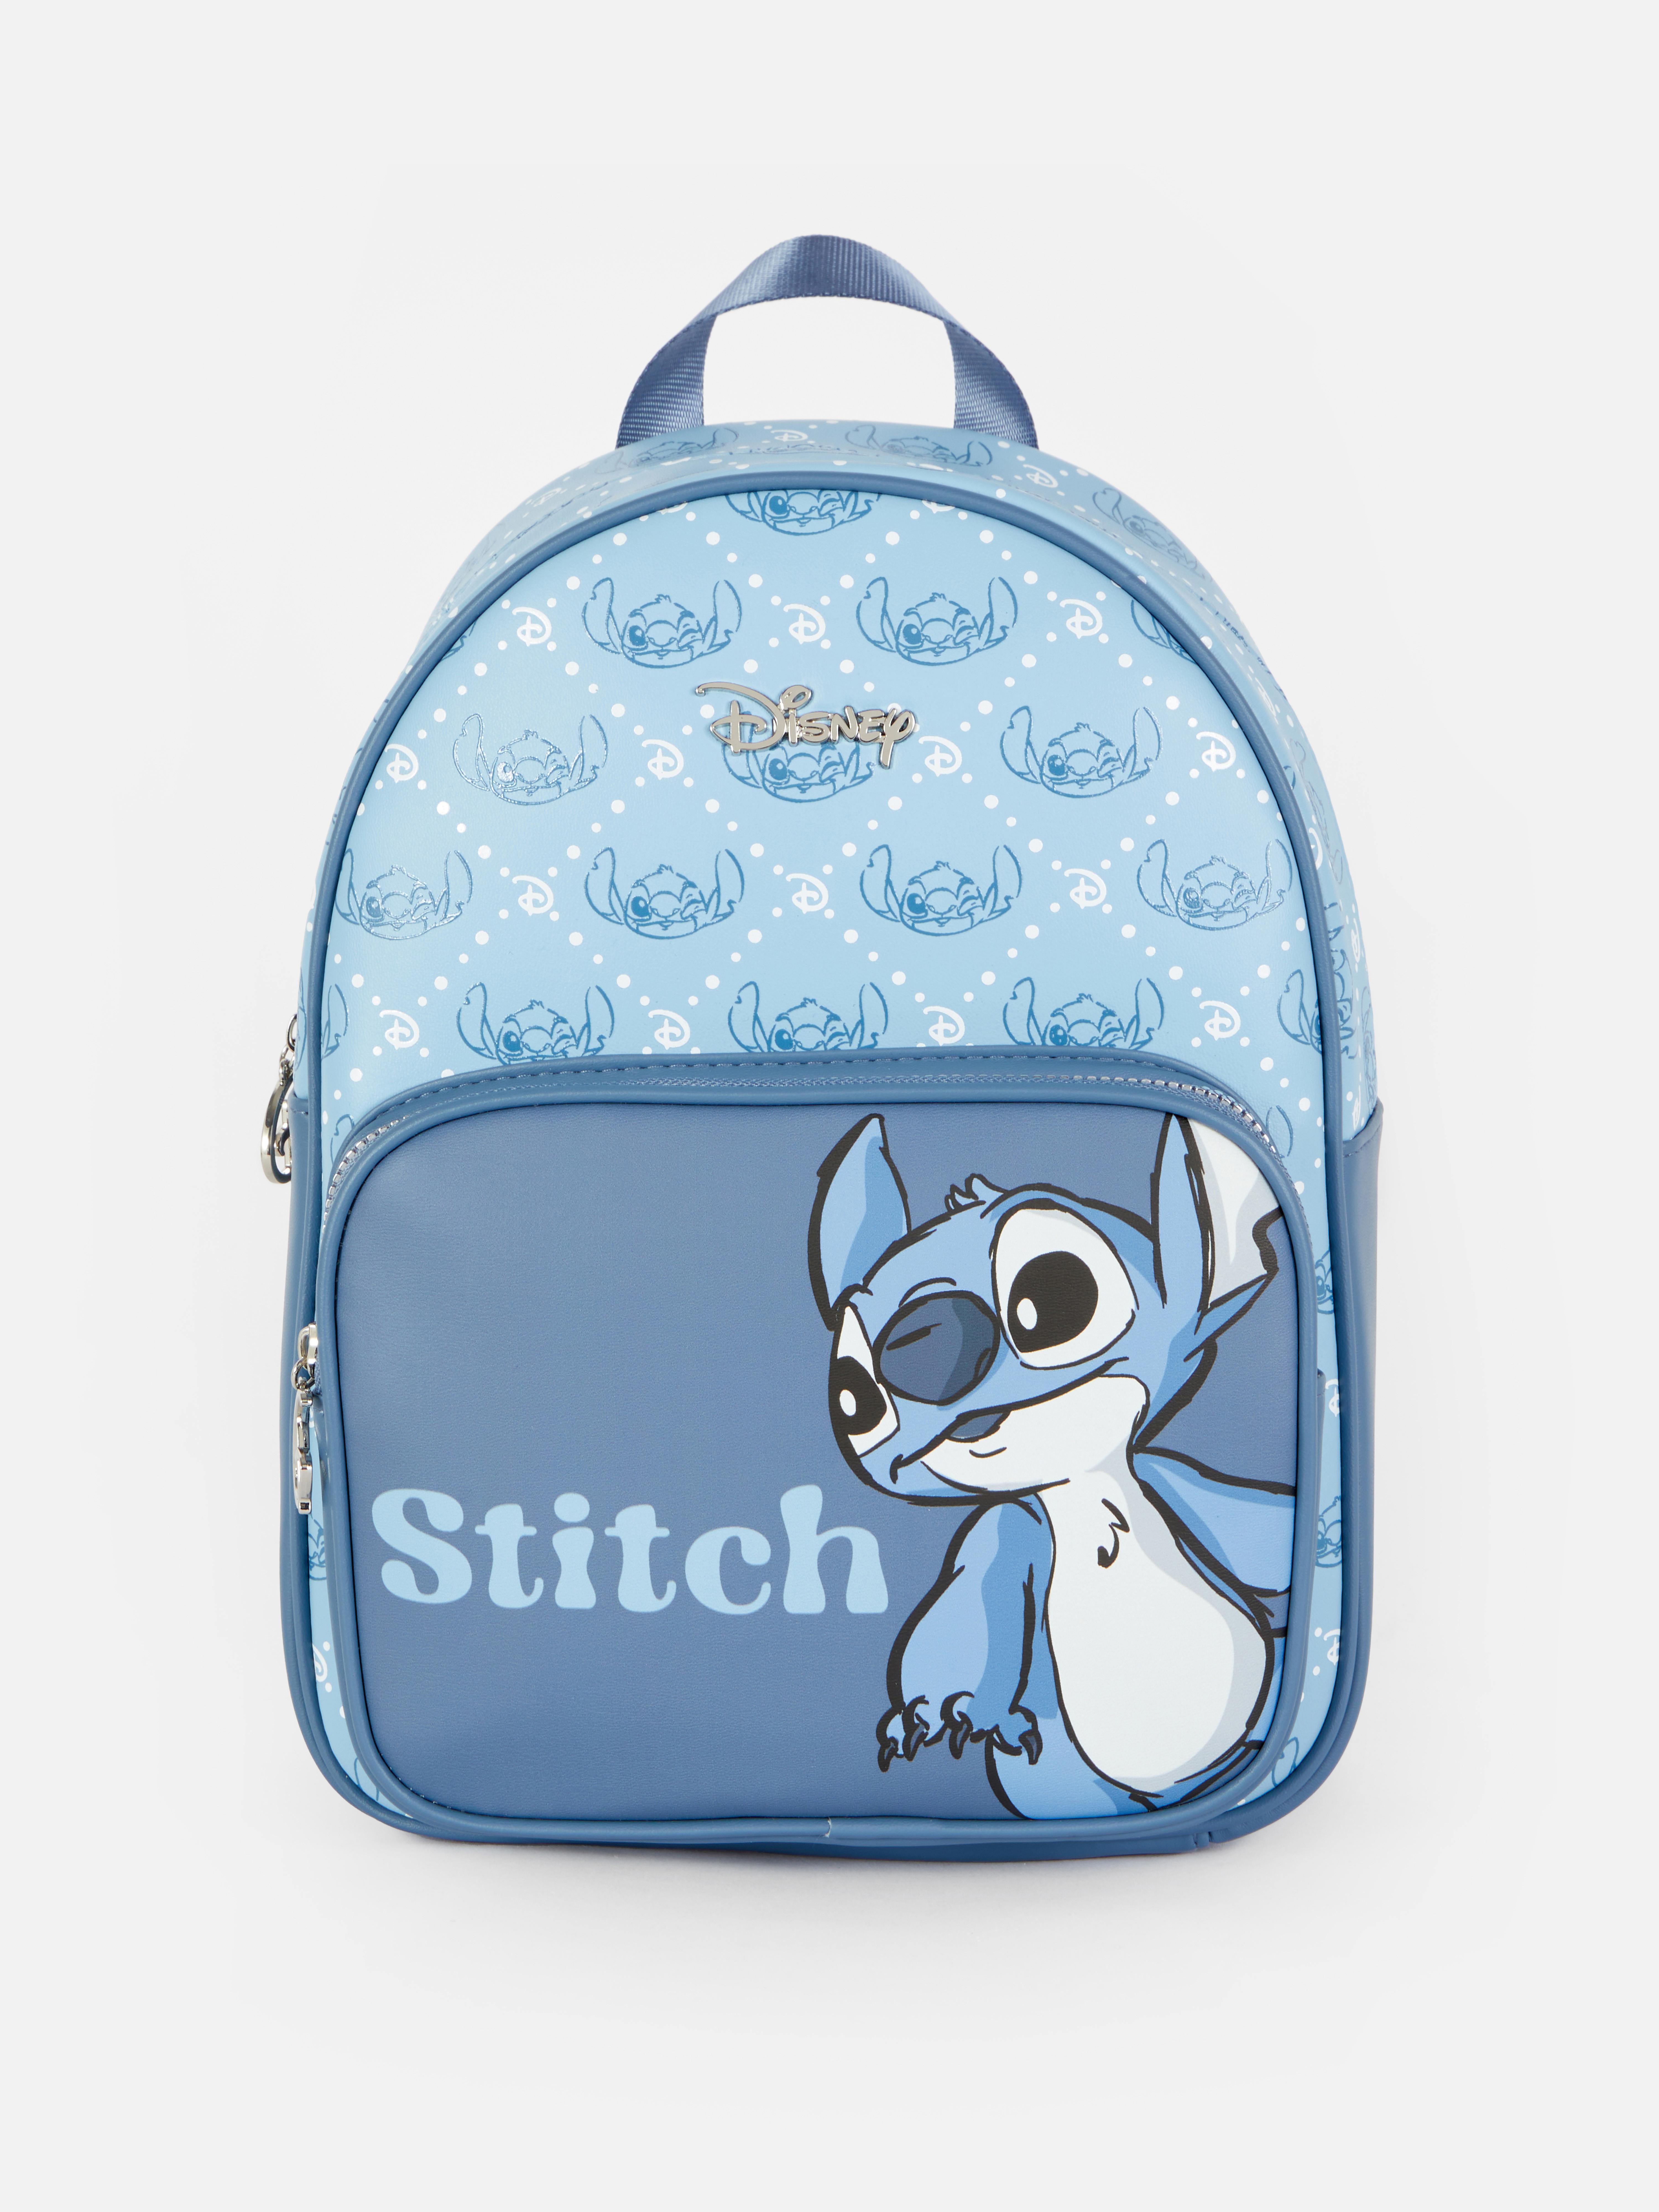 Mini Bolsa Stitch Disney Primark, Bolsa de mão Feminina Disney Nunca Usado  79536969